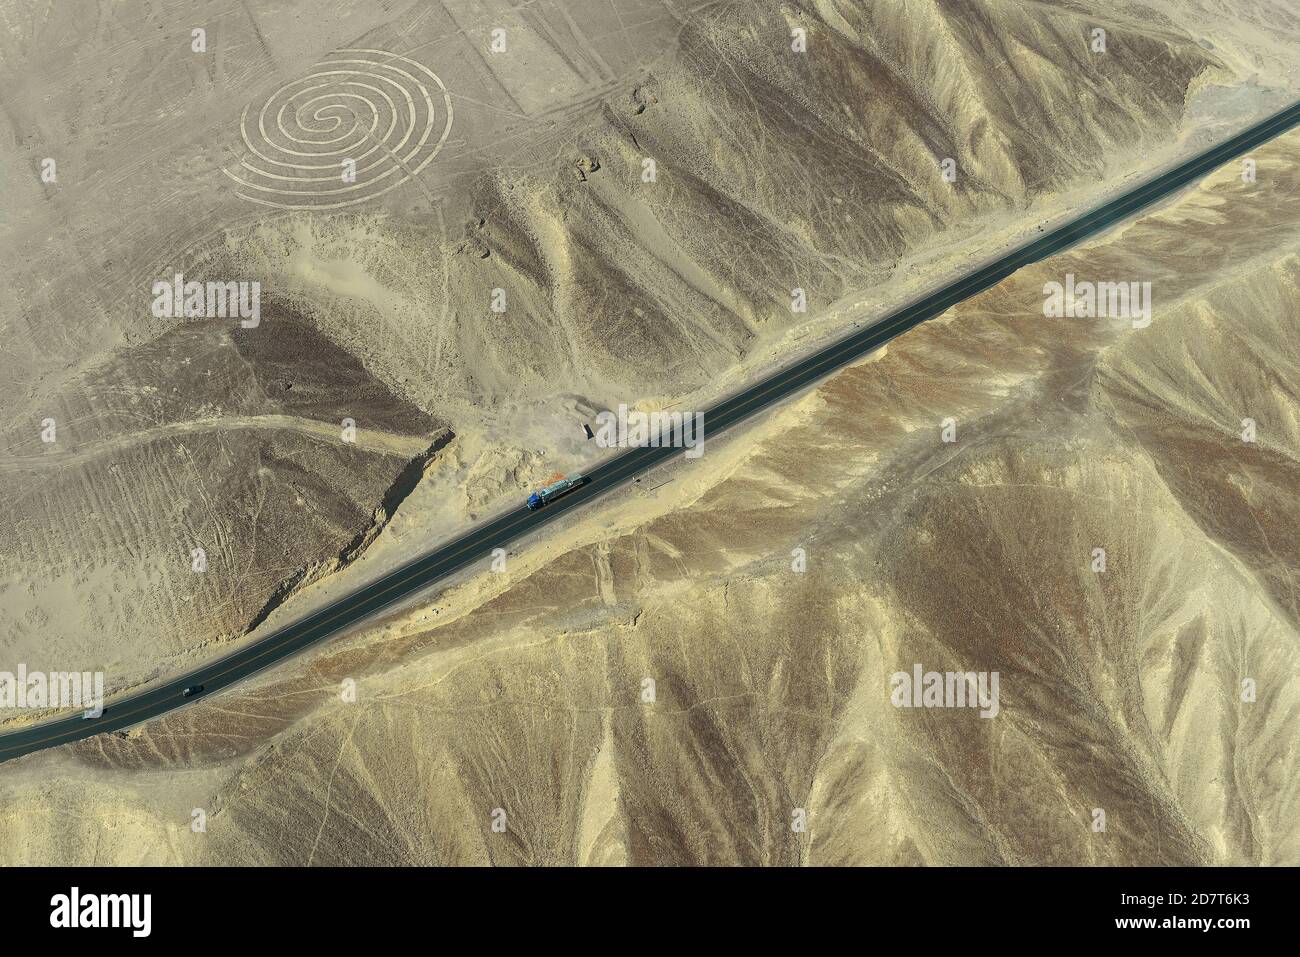 Vista aerea del geoglifico a spirale nel deserto peruviano conosciuto come le misteriose linee di Nazca con l'autostrada Panamericana vicino a Nazca città, Perù. Foto Stock